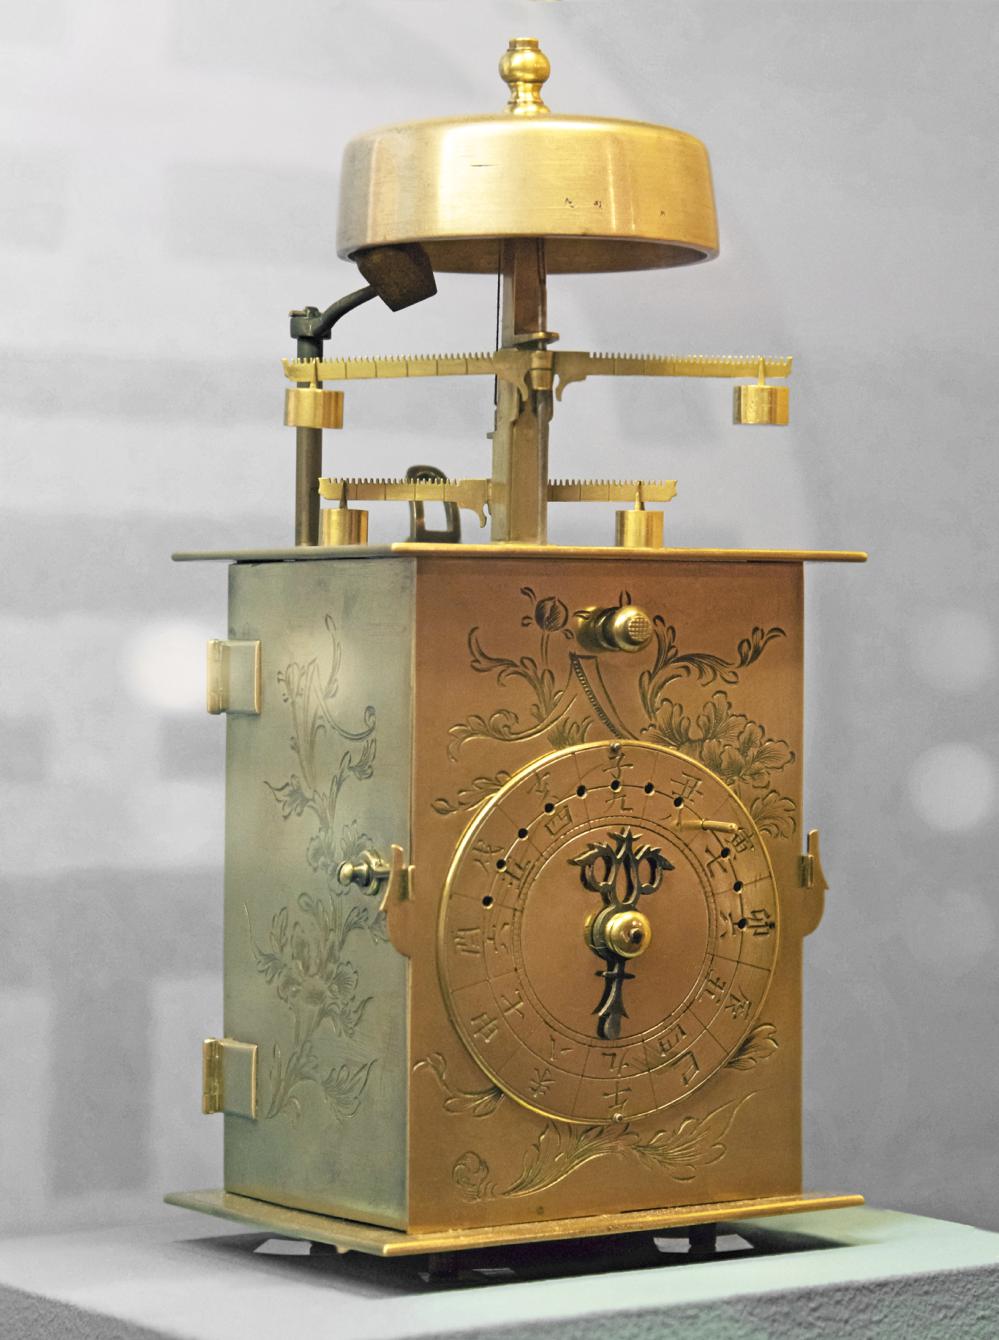 Wadokei Japonese Clock à-double-foliot, Edo era, 